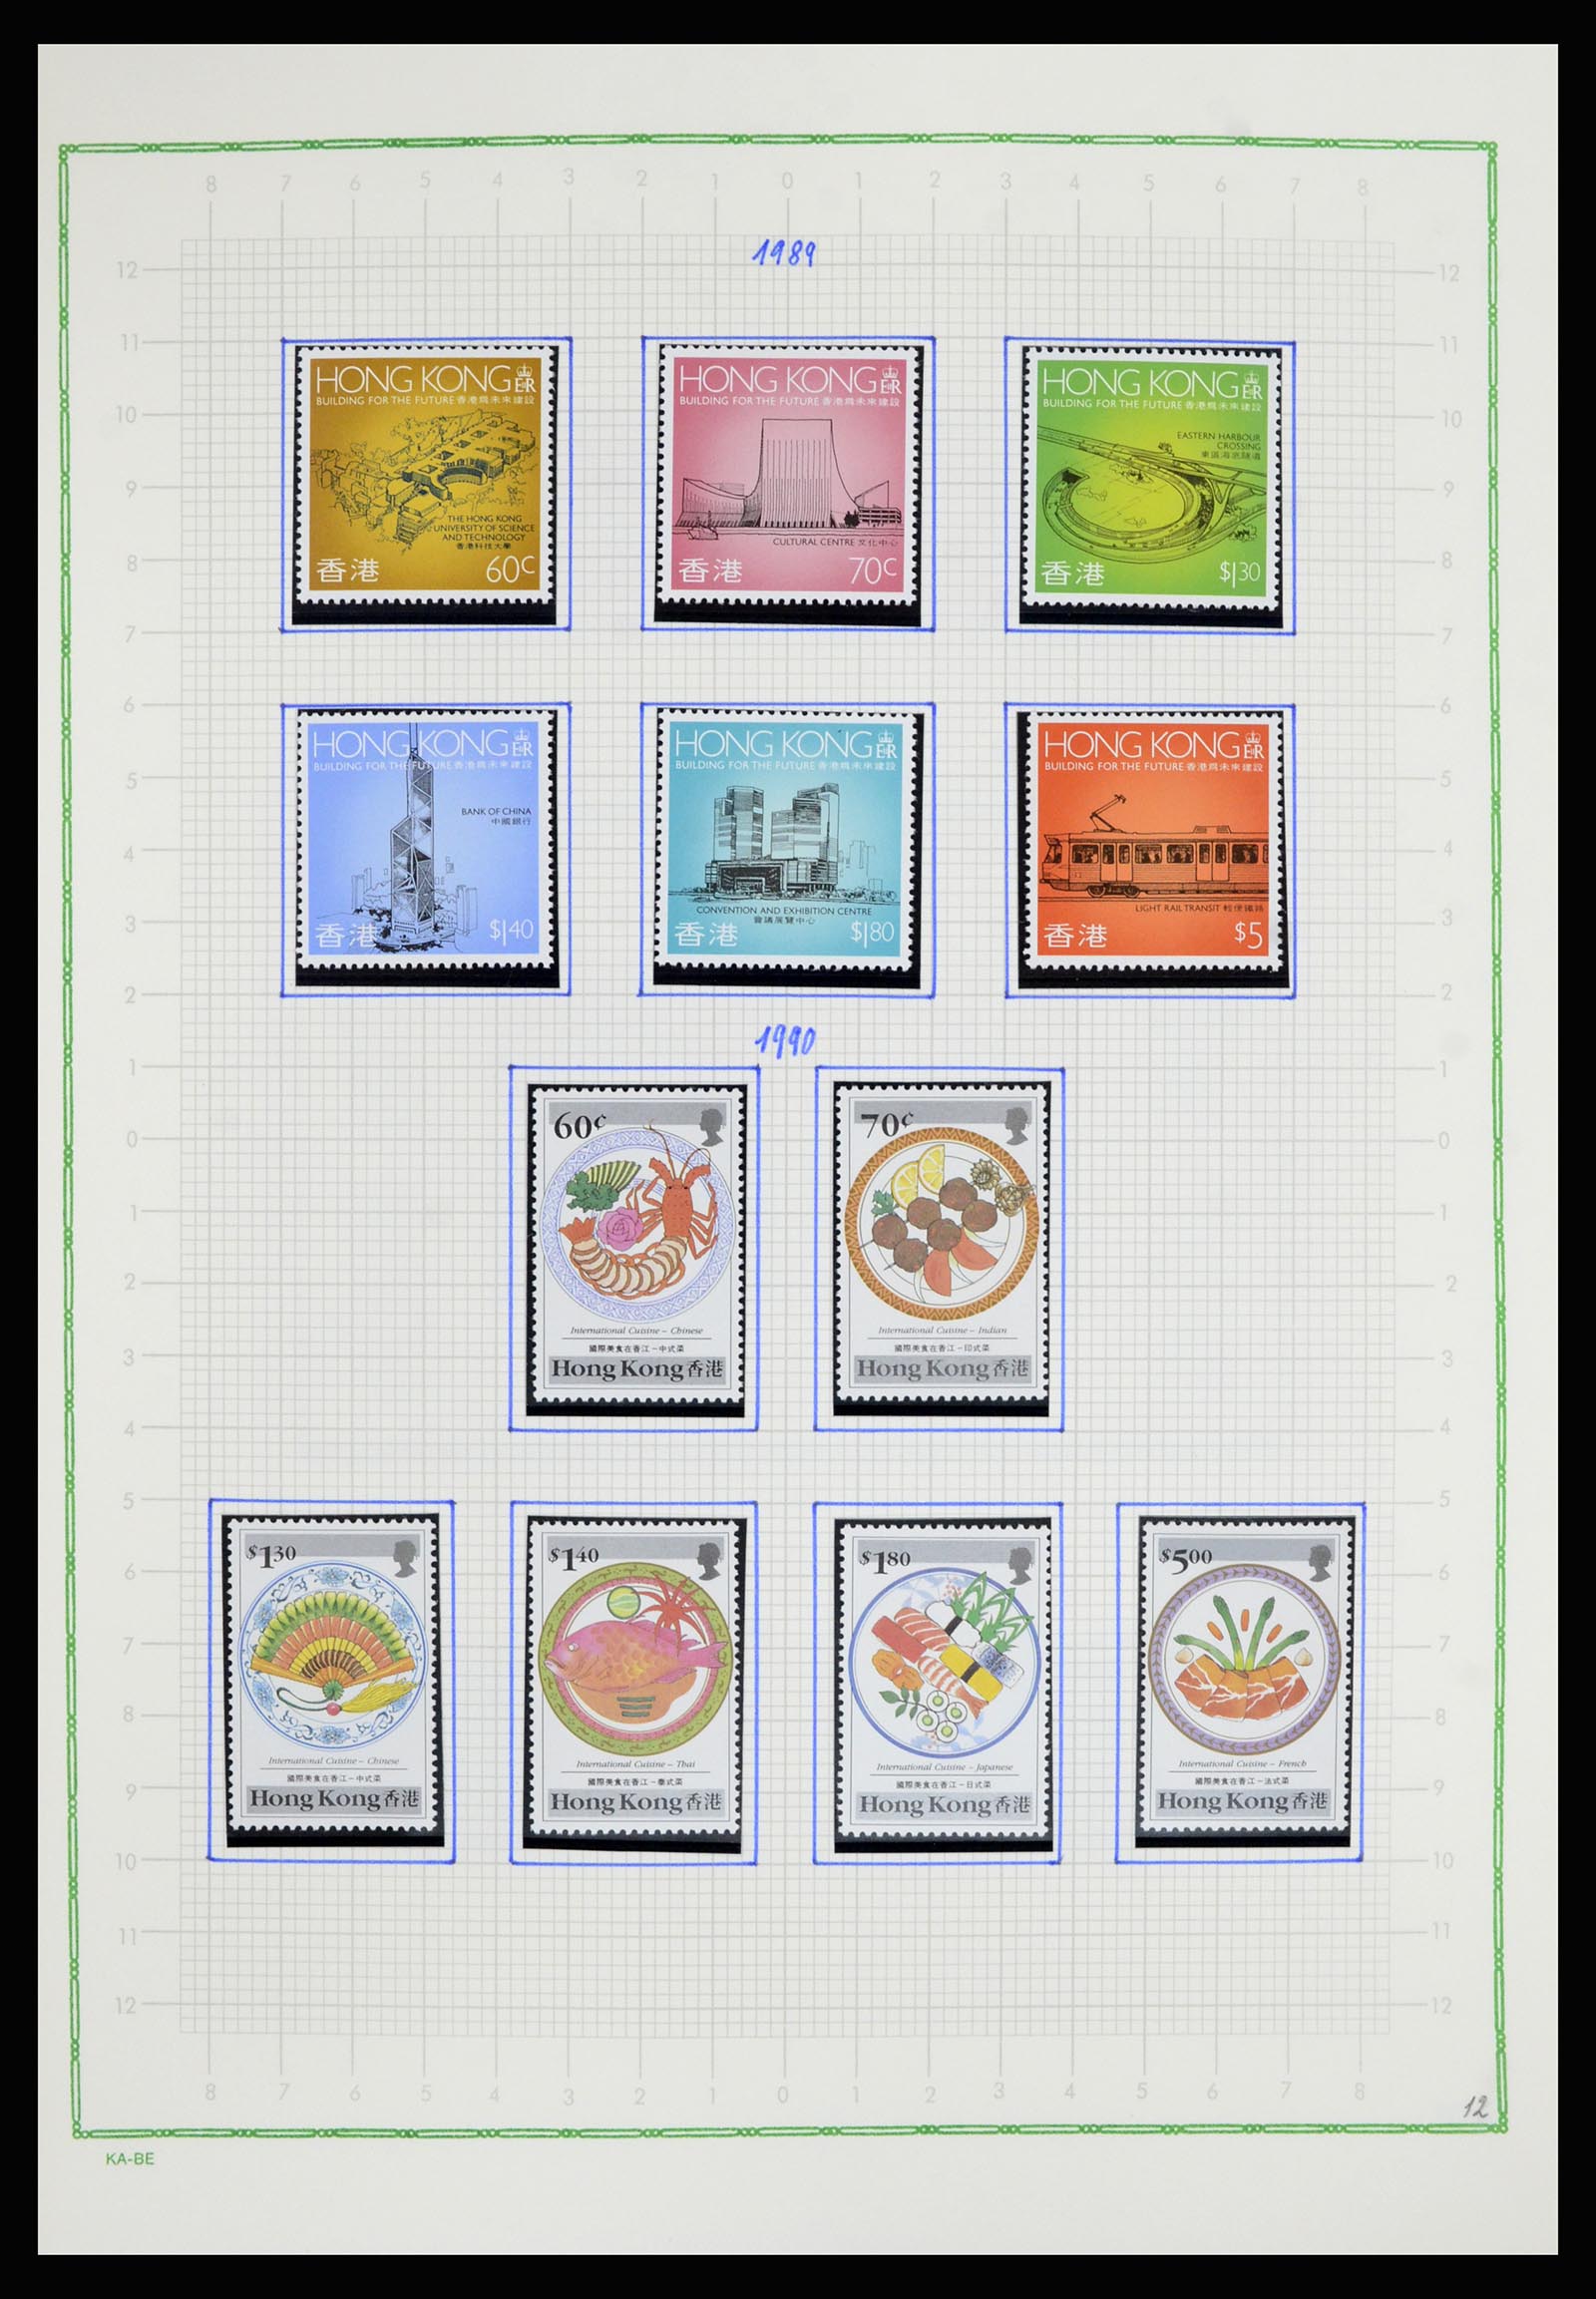 36942 055 - Stamp collection 36942 Hong Kong 1863-1997.